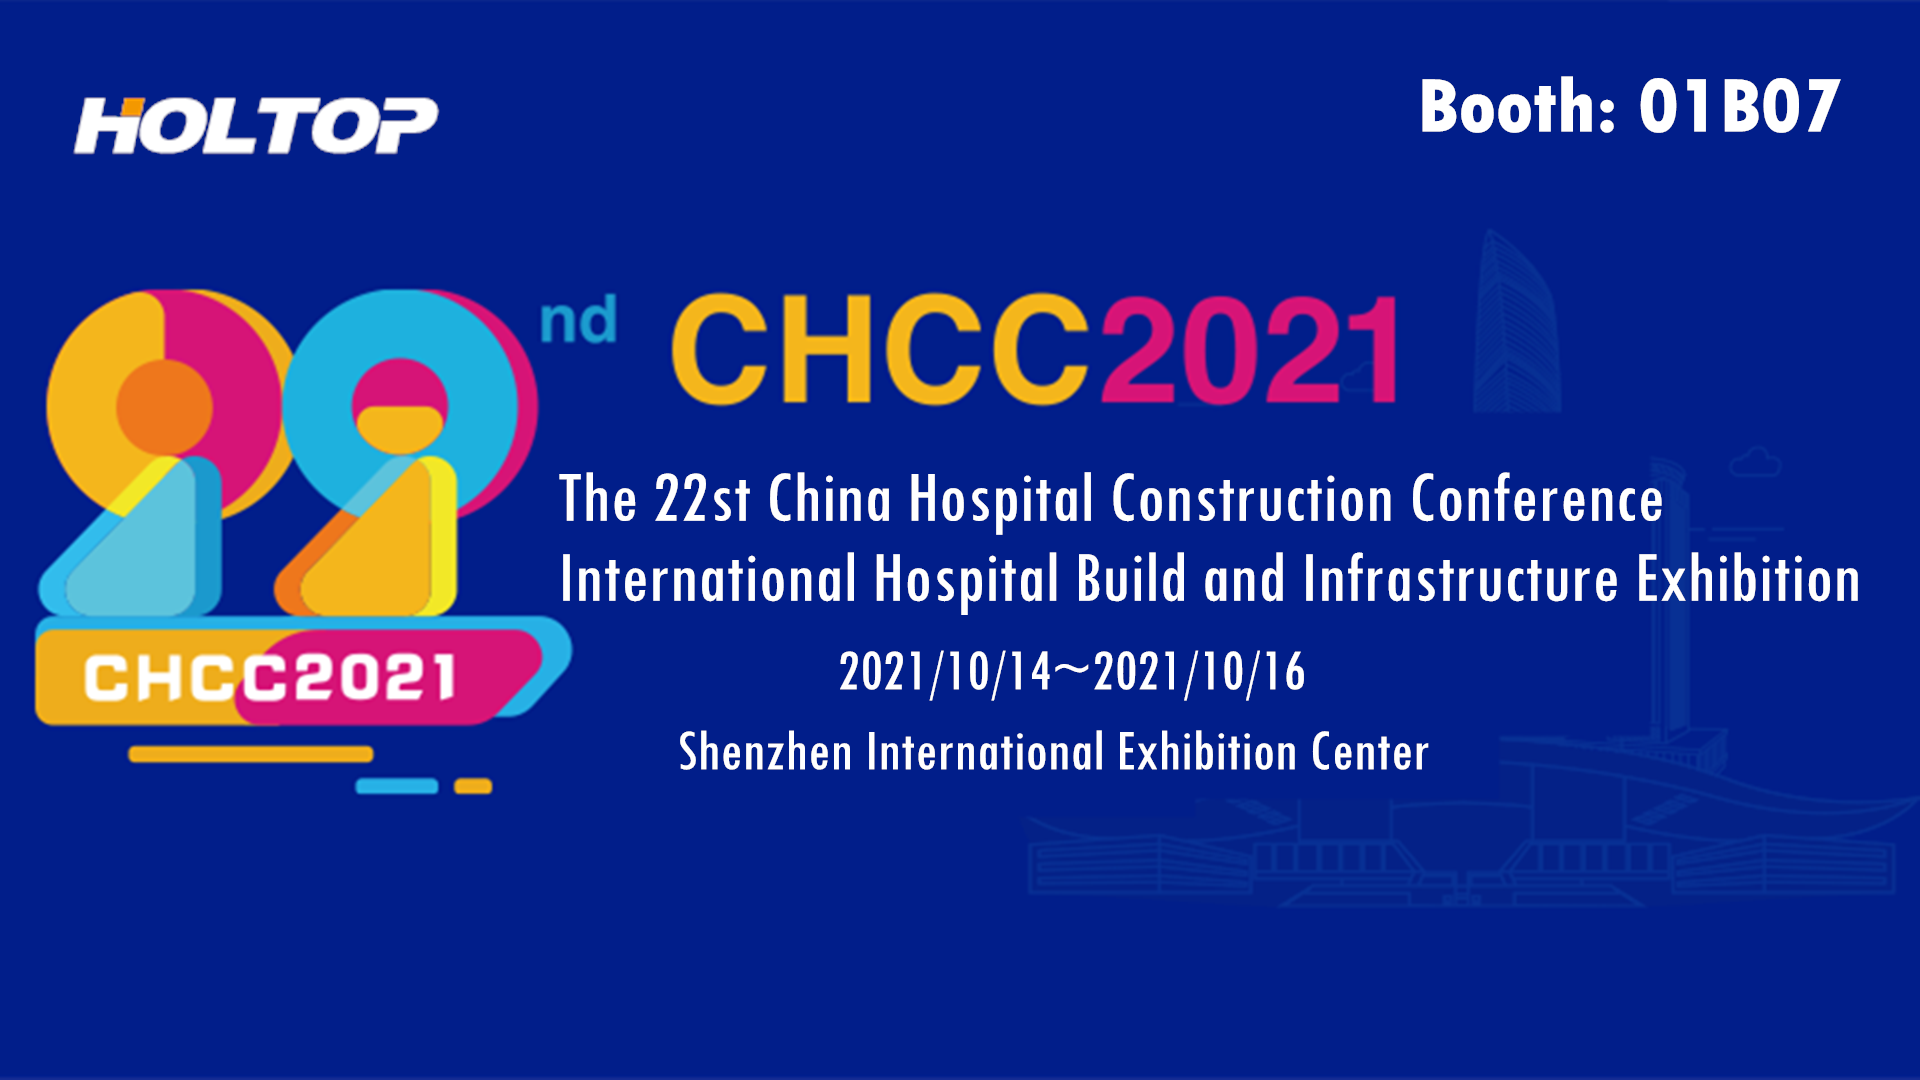 Holtop partecipa alla 22a conferenza sulla costruzione di ospedali cinesi Mostra internazionale di costruzione e infrastrutture ospedaliere (CHCC2021)